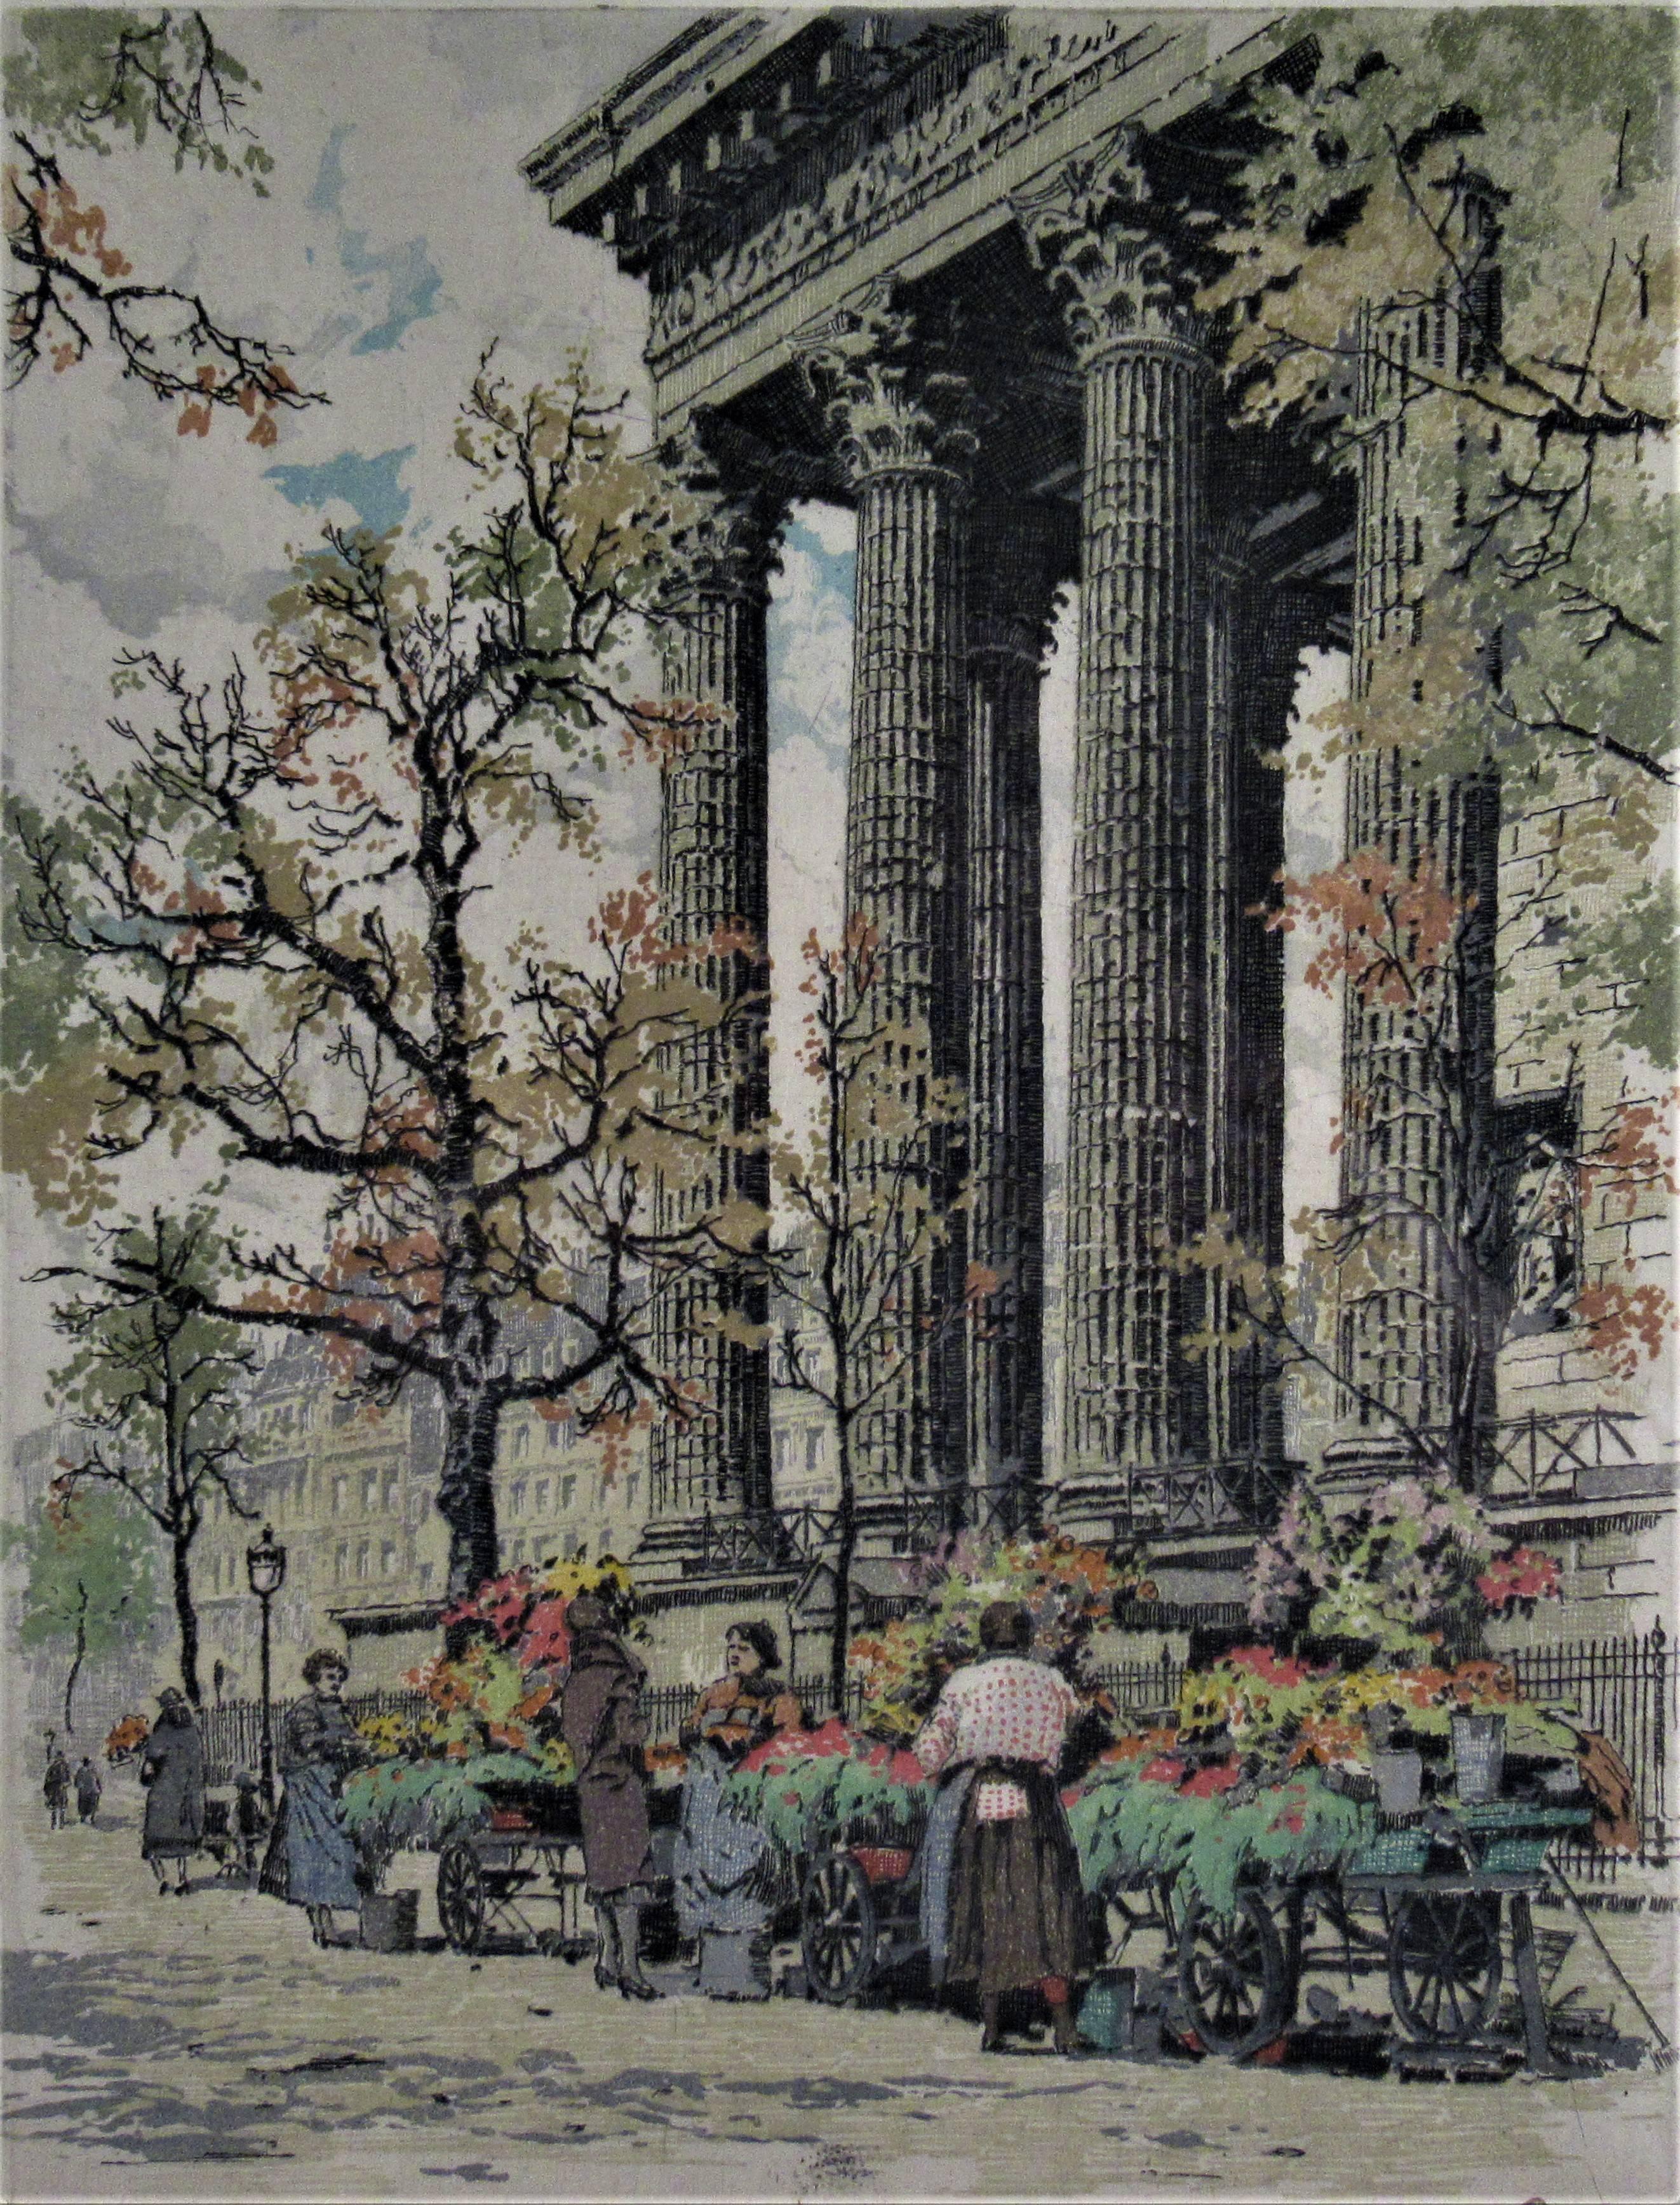 Marche aux Fleurs, Place de la Madeleine, Paris - Print by Hans Figura